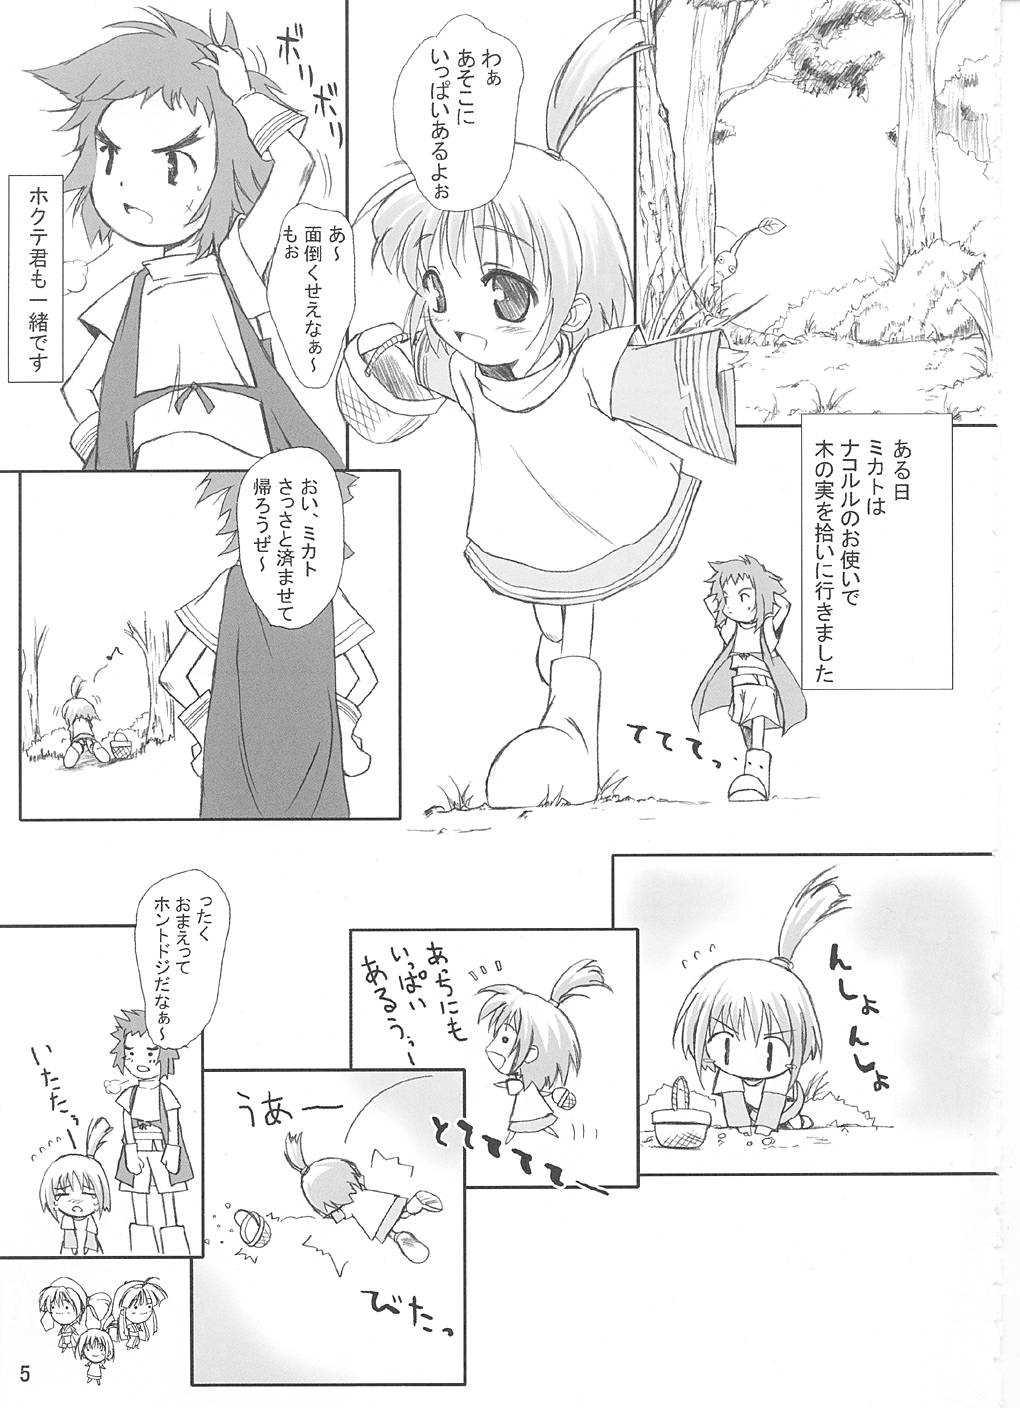 Sologirl Pikomiko - Samurai spirits Bulge - Page 4